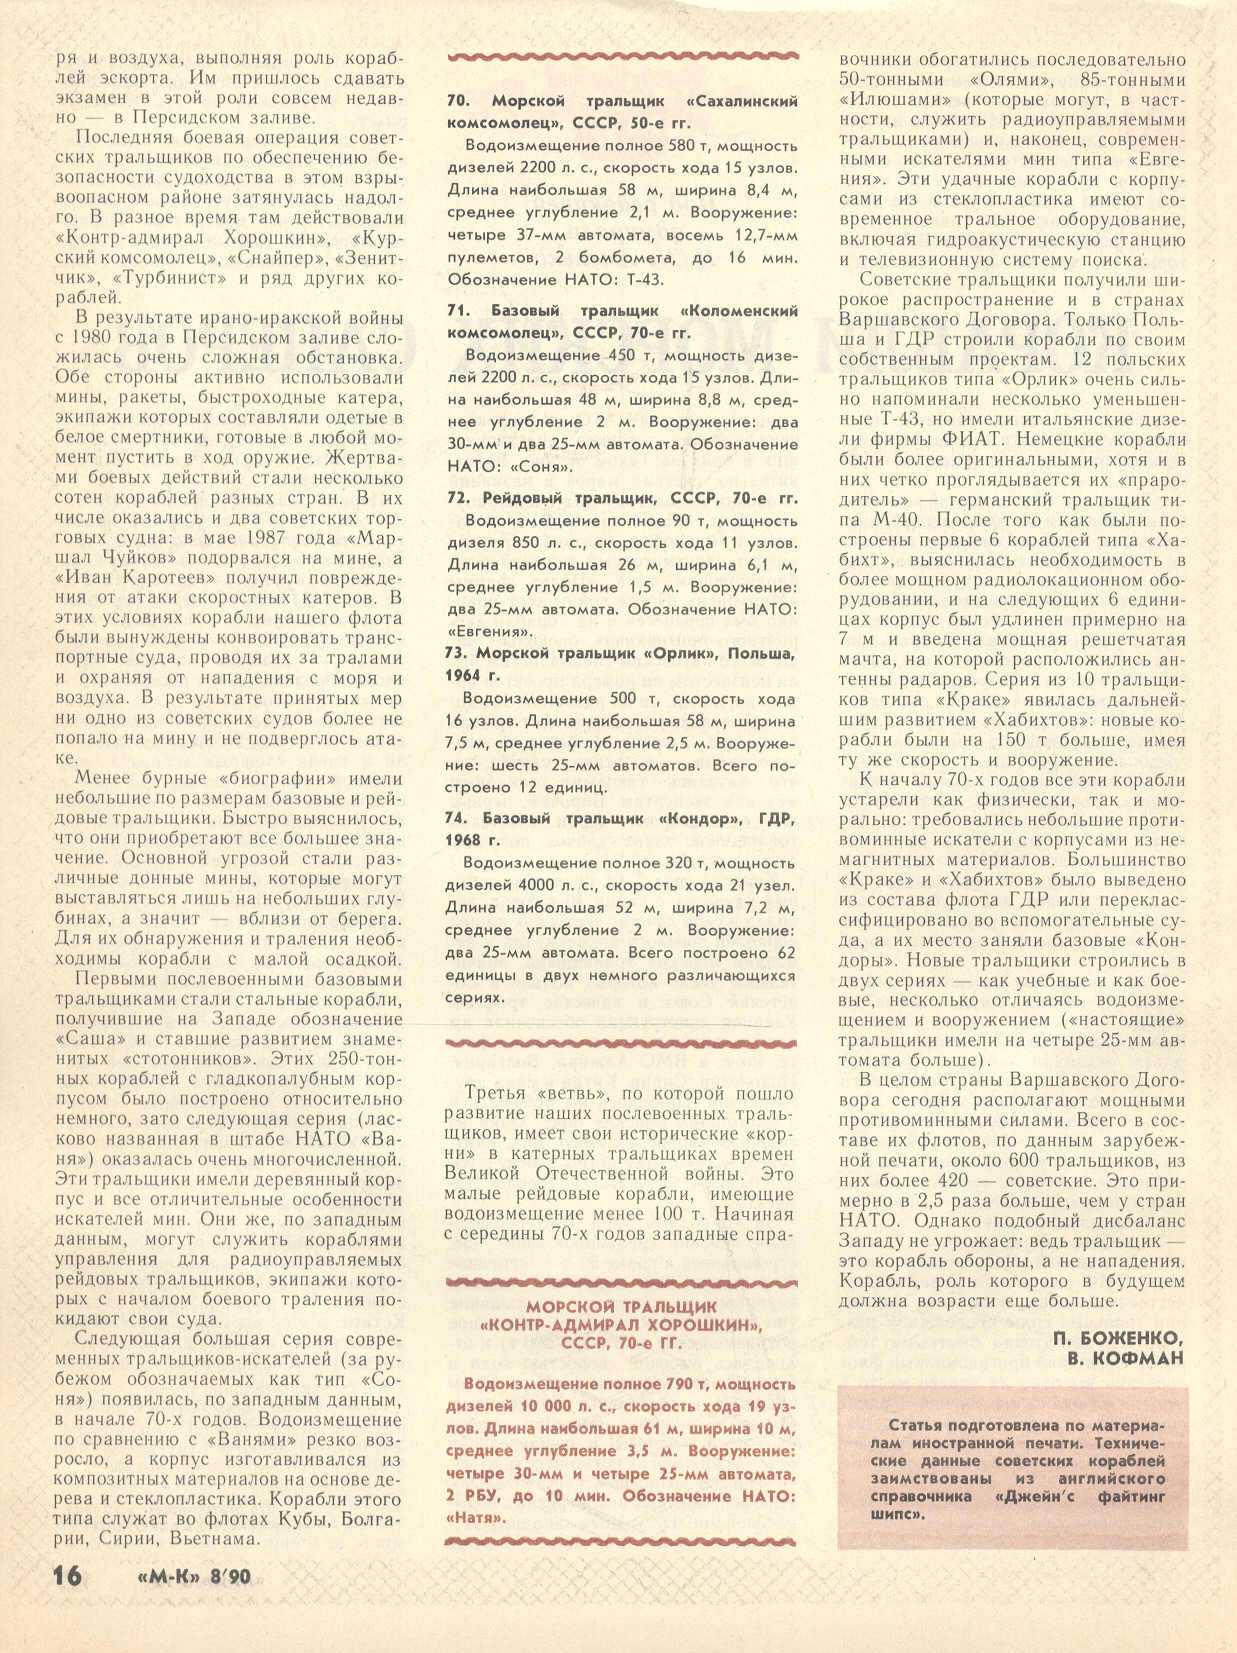 МК 8, 1990, 16 c.